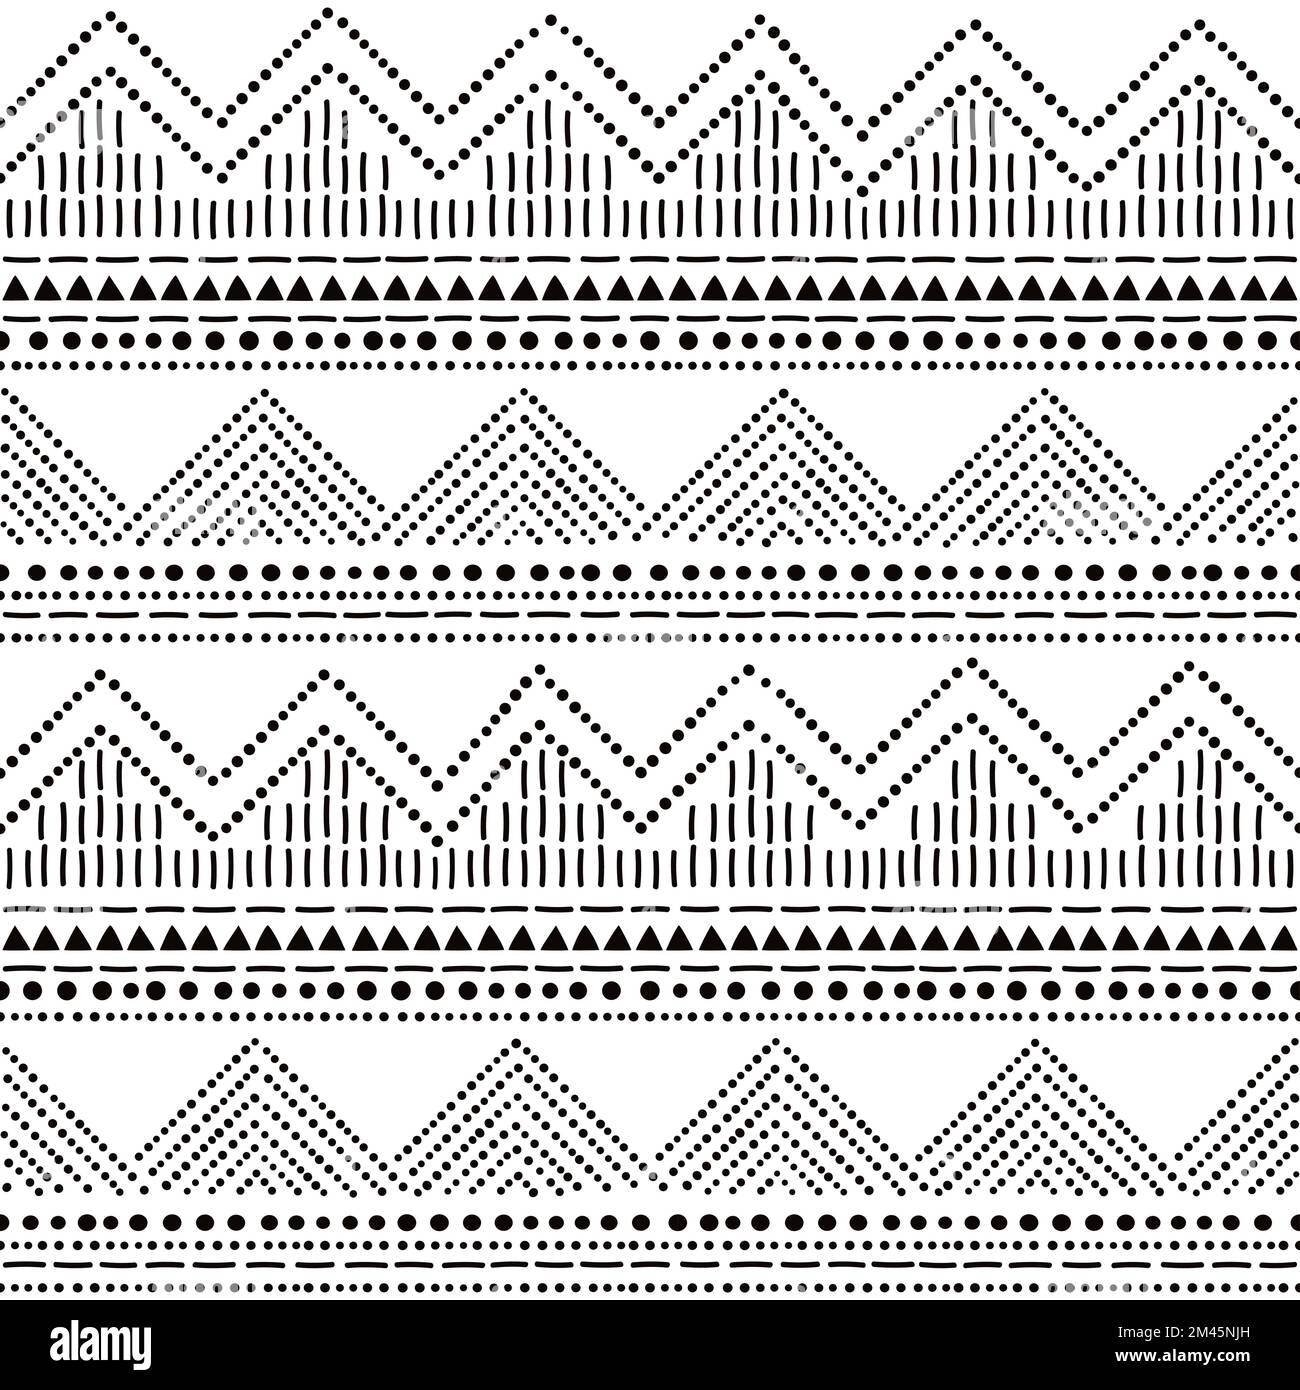 Poterie préhistorique à pois avec motif sans couture - Bell Beaker folk art, design répétitif en noir et blanc Illustration de Vecteur